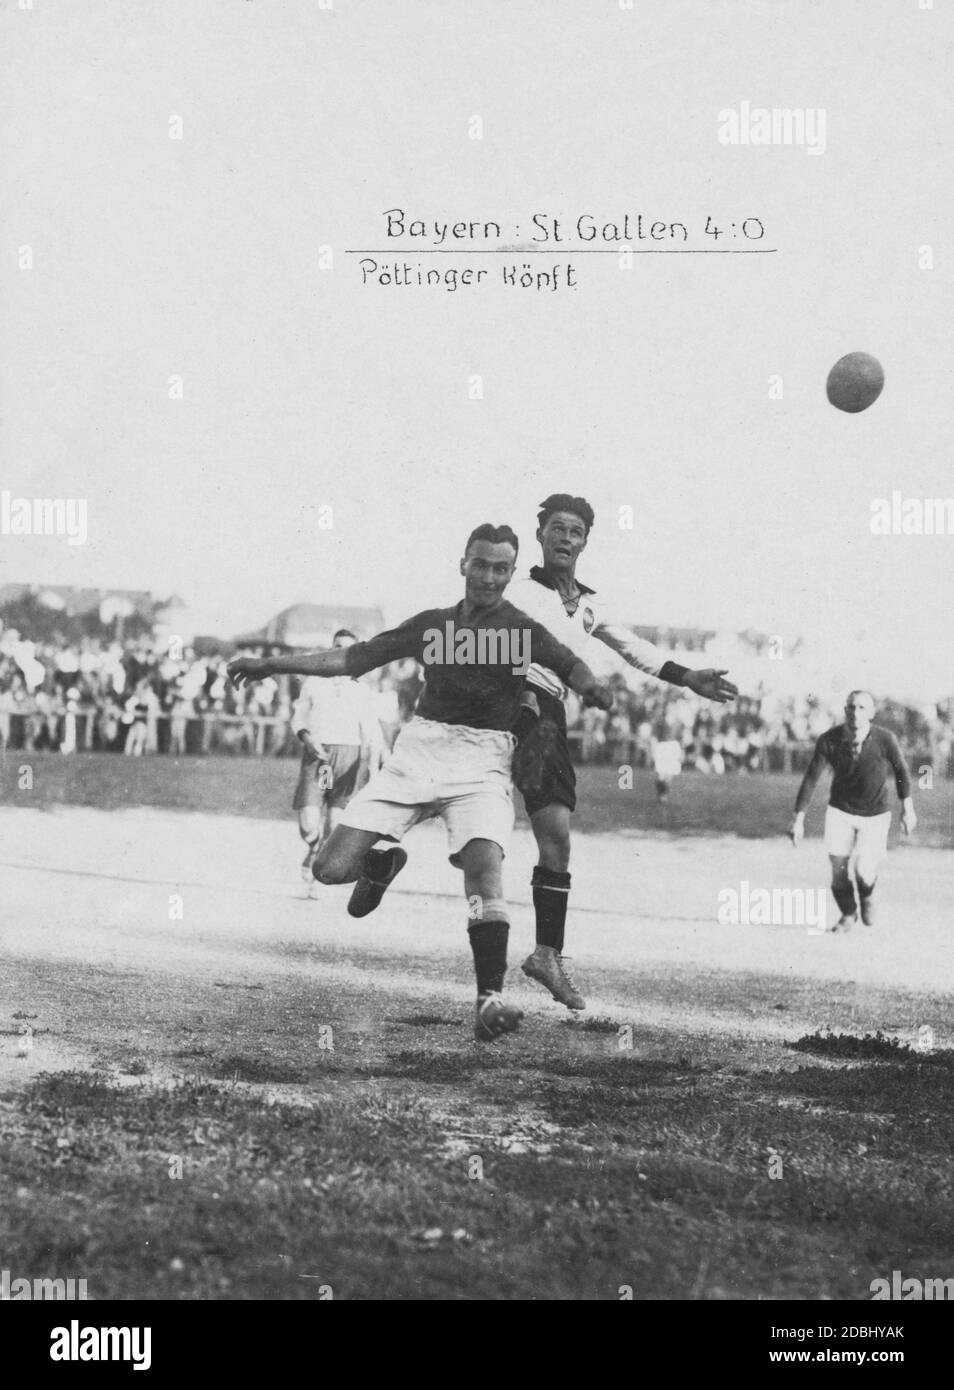 Alla partita di calcio internazionale, la Baviera gioca contro San Gallo. Il giocatore Poettinger decapita un header. I giocatori bavaresi vincono con 4 a 0. Foto Stock